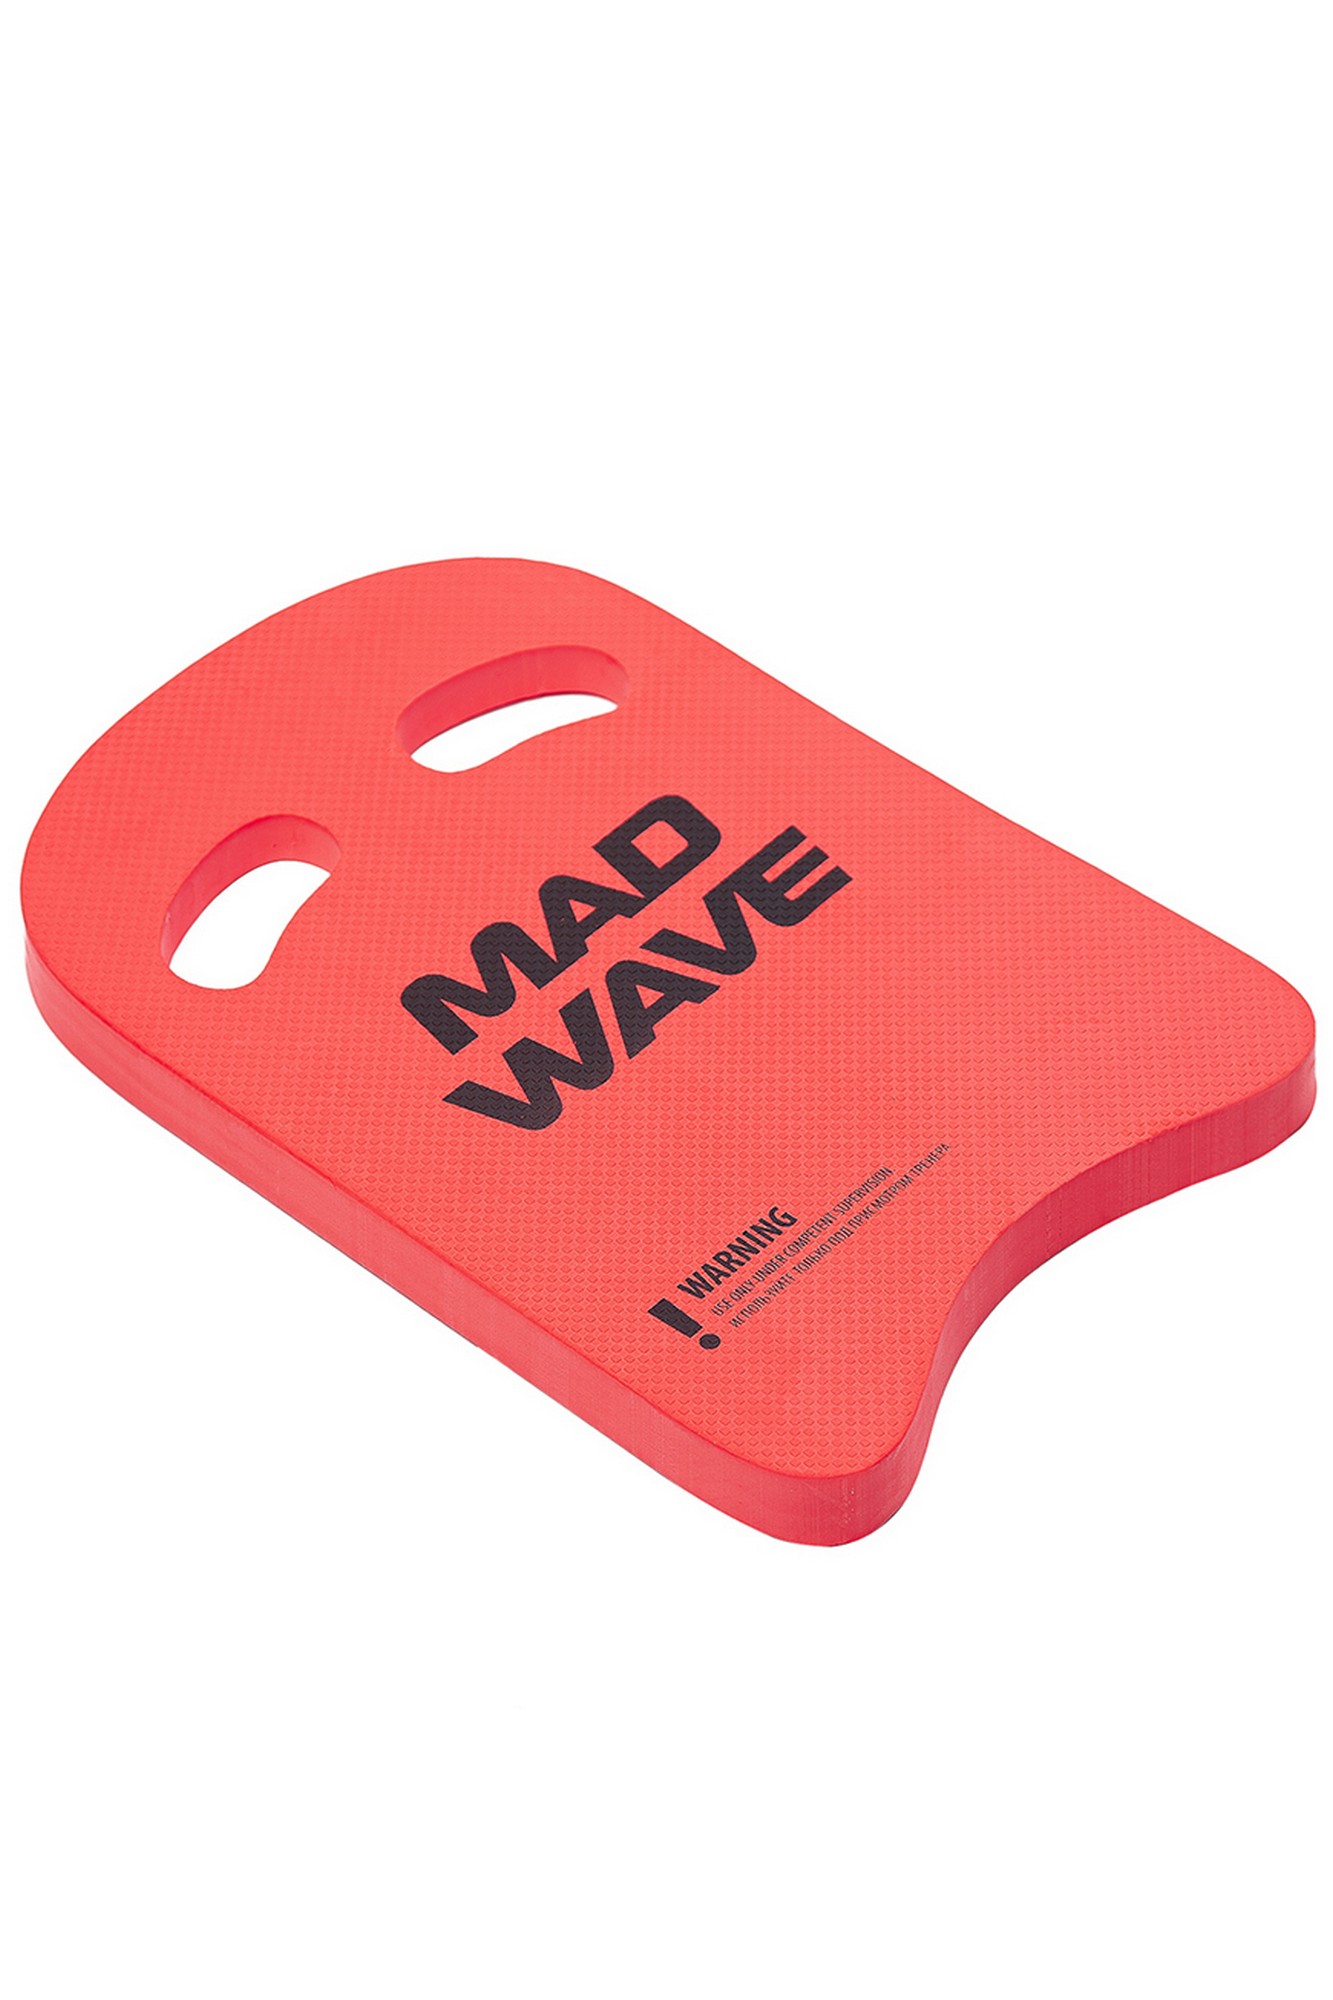    Mad Wave Kickboard Light 35 M0721 03 0 05W